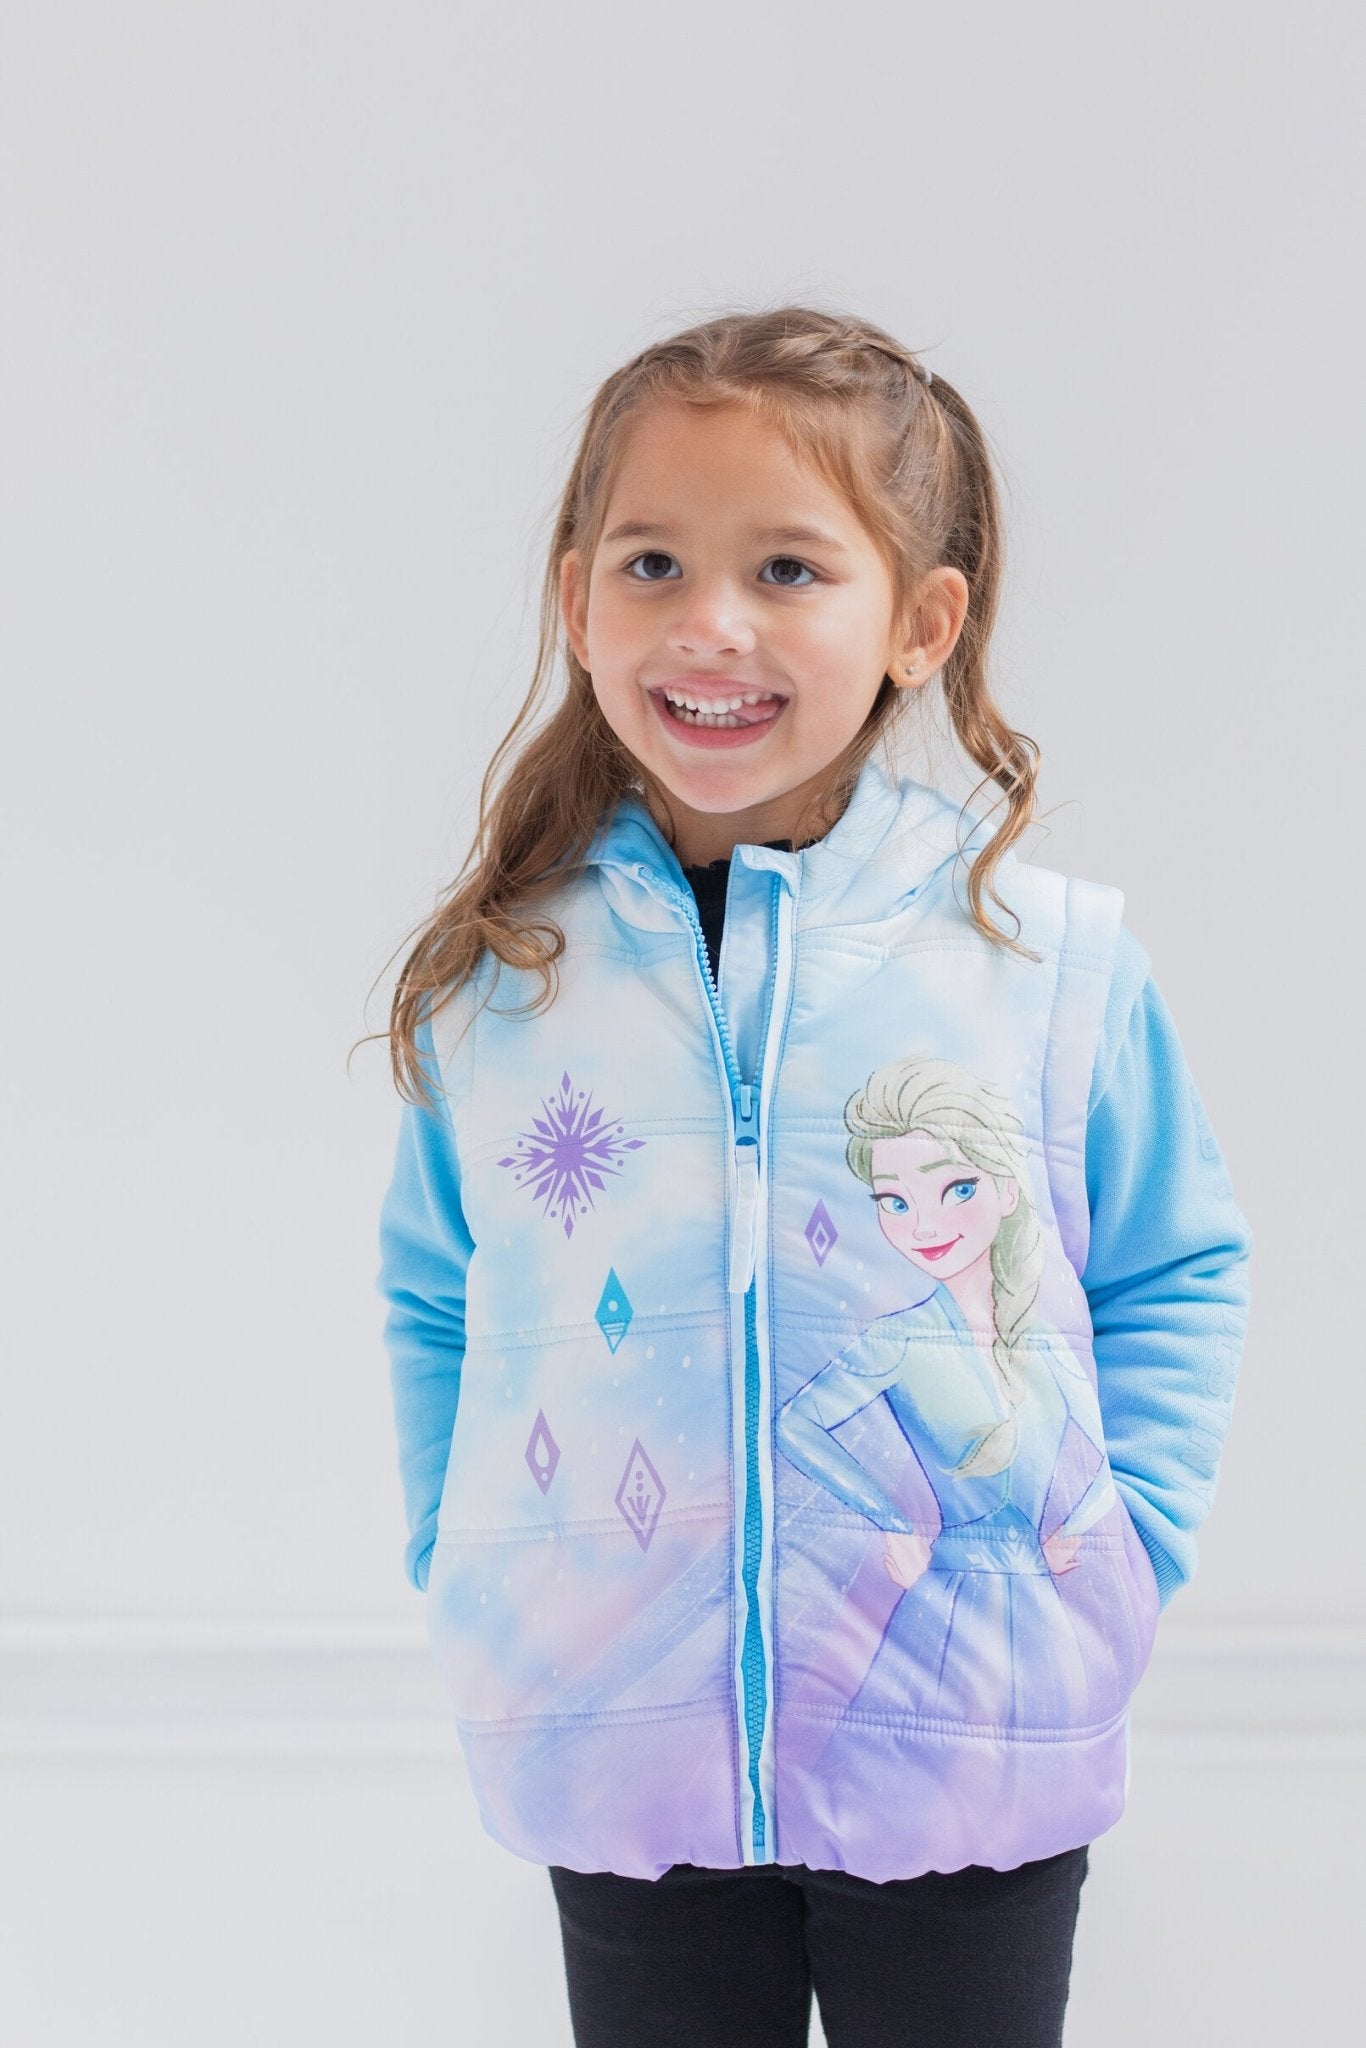 Frozen Queen Elsa Zip Up Vest 2fer Jacket - imagikids